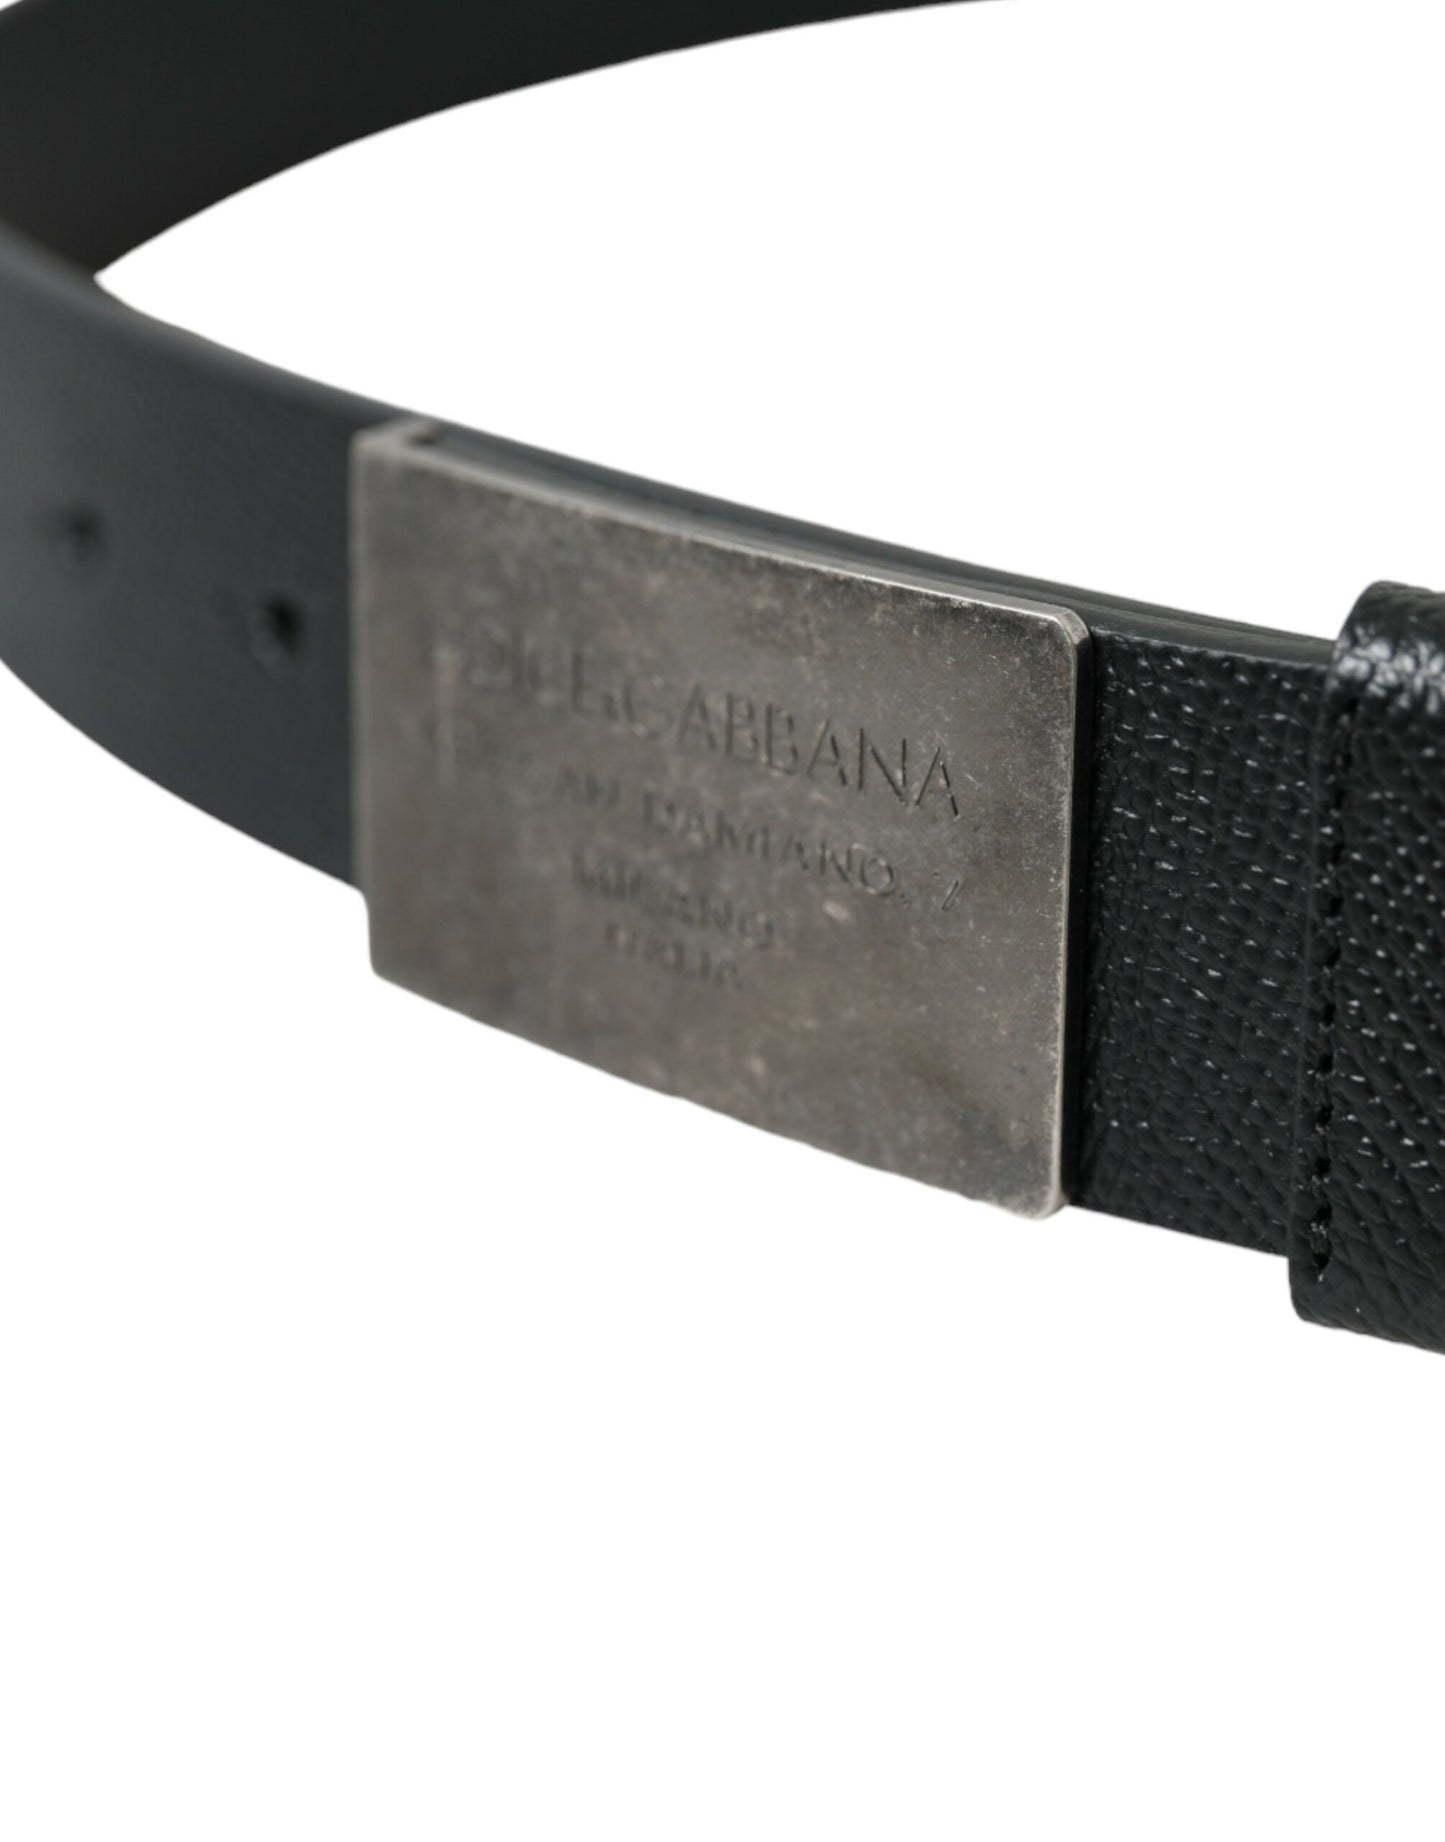 Elegant Black Calfskin Leather Belt